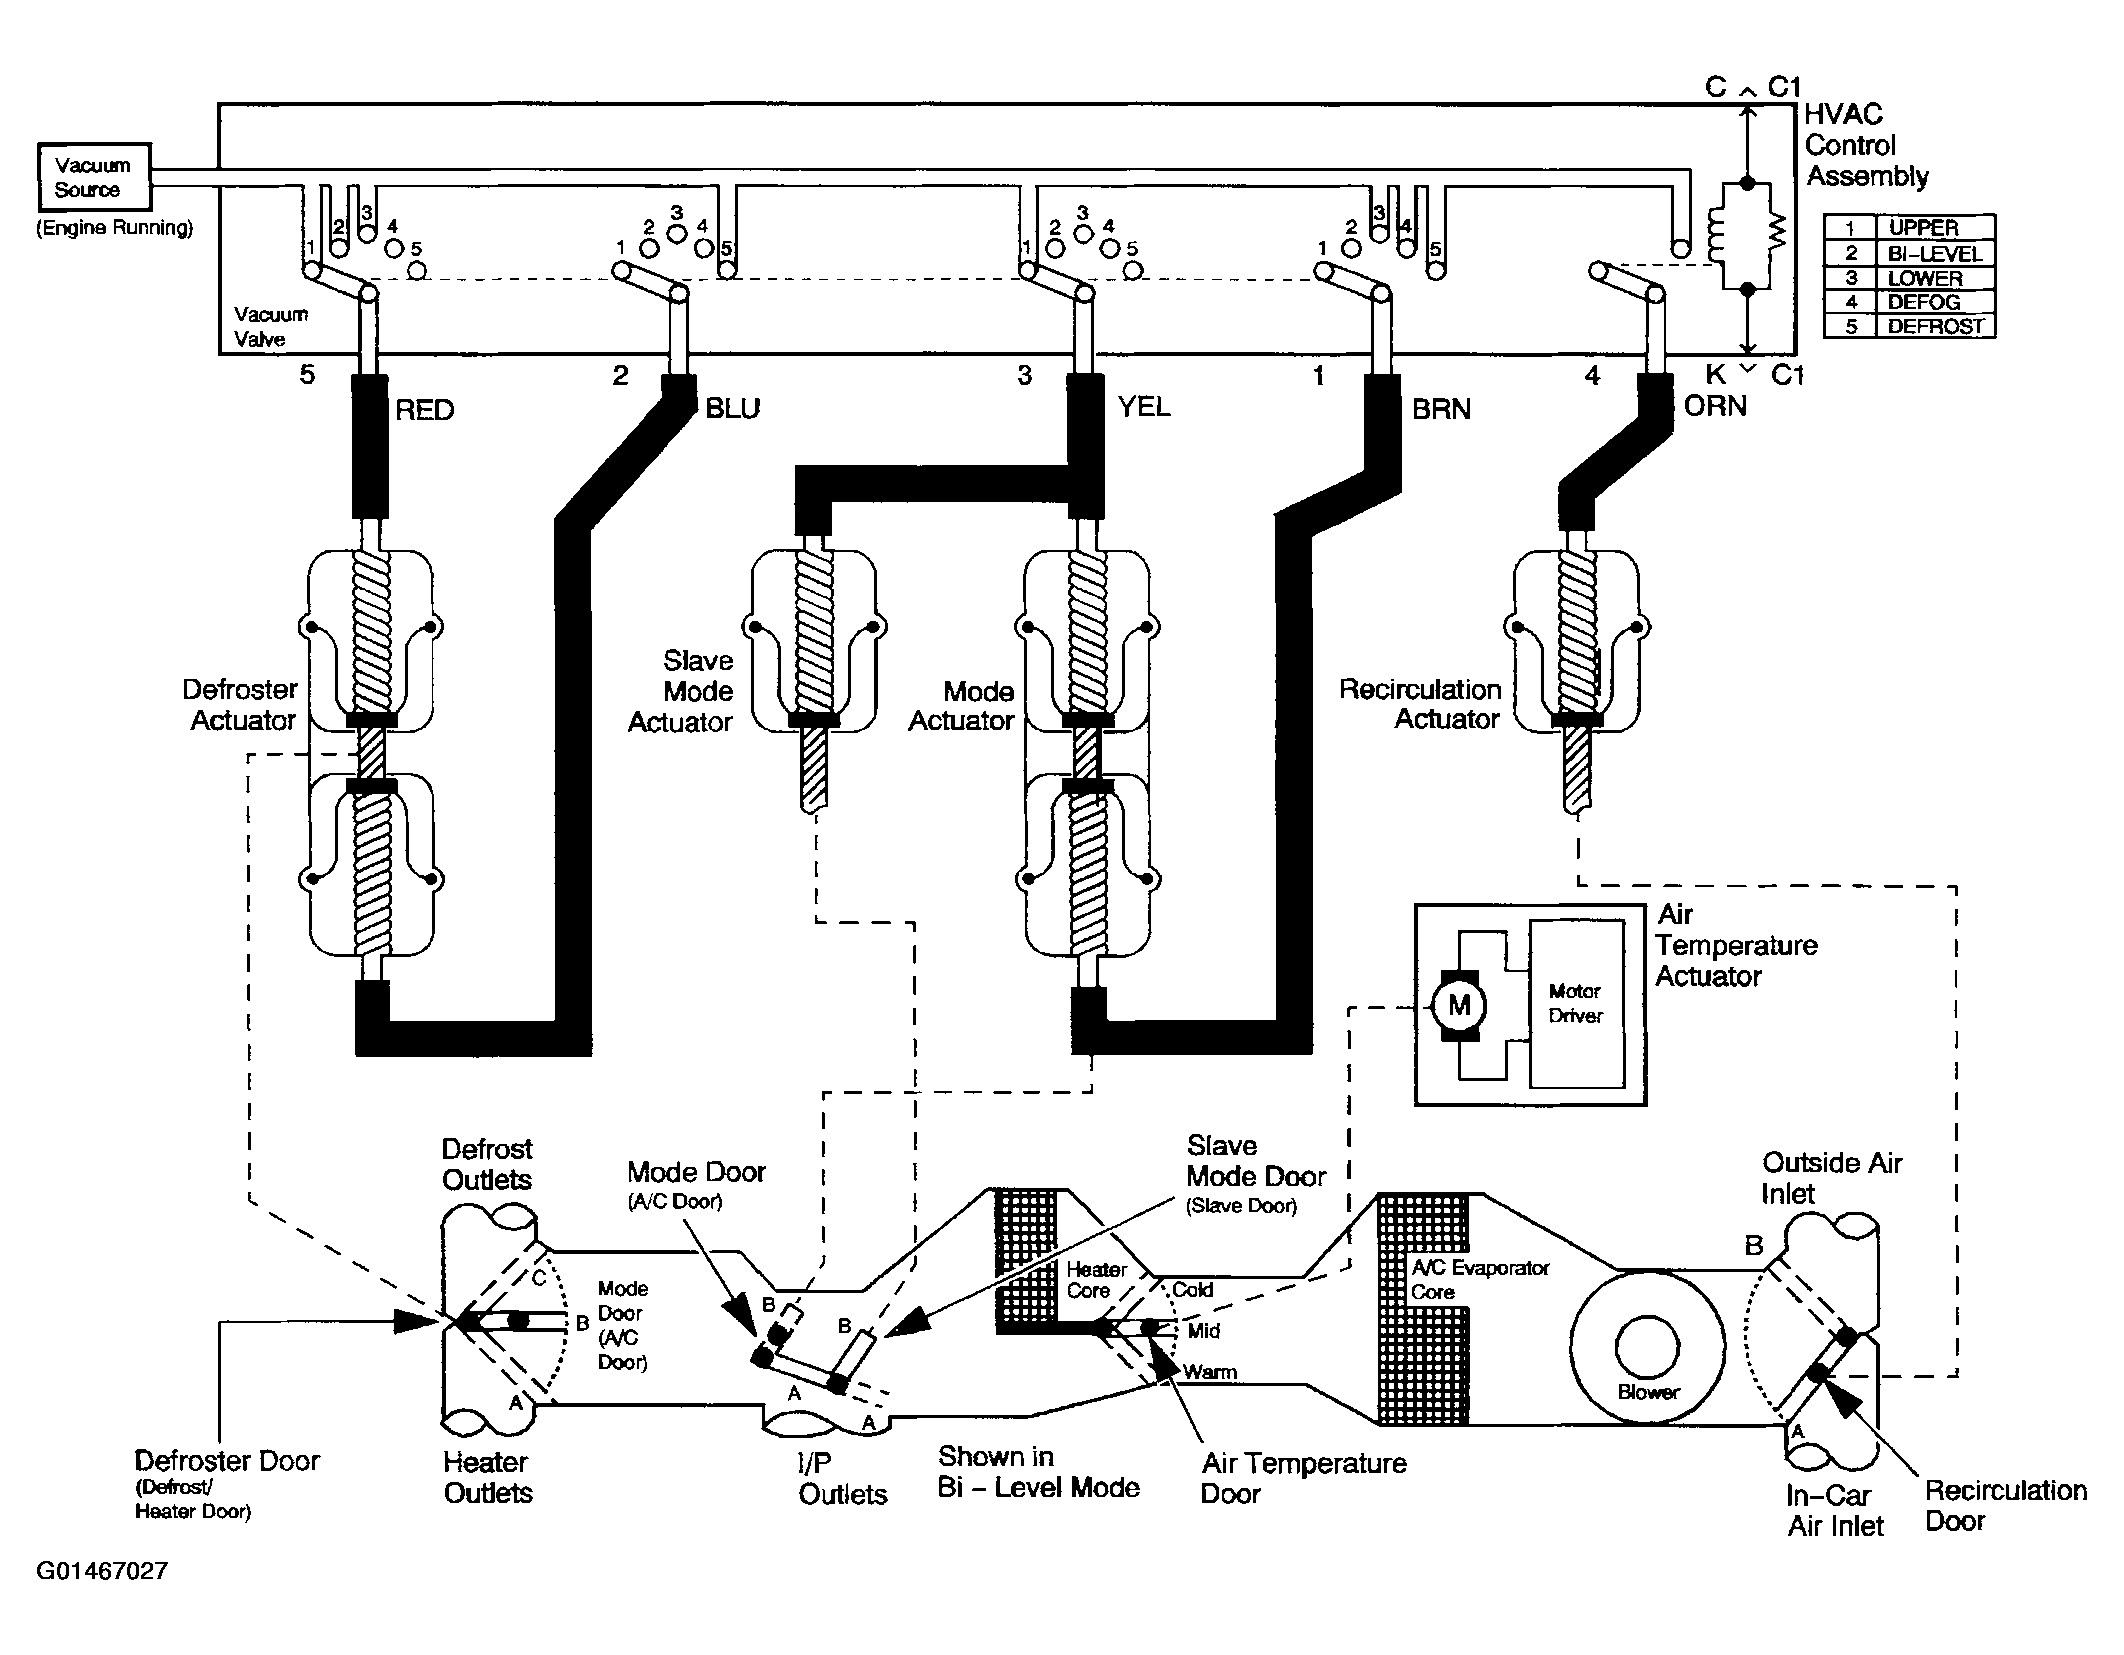 Chevy 3 1 Engine Diagram 2 2003 Chevy 43 Vacuum Diagram Wiring Diagram New Of Chevy 3 1 Engine Diagram 2